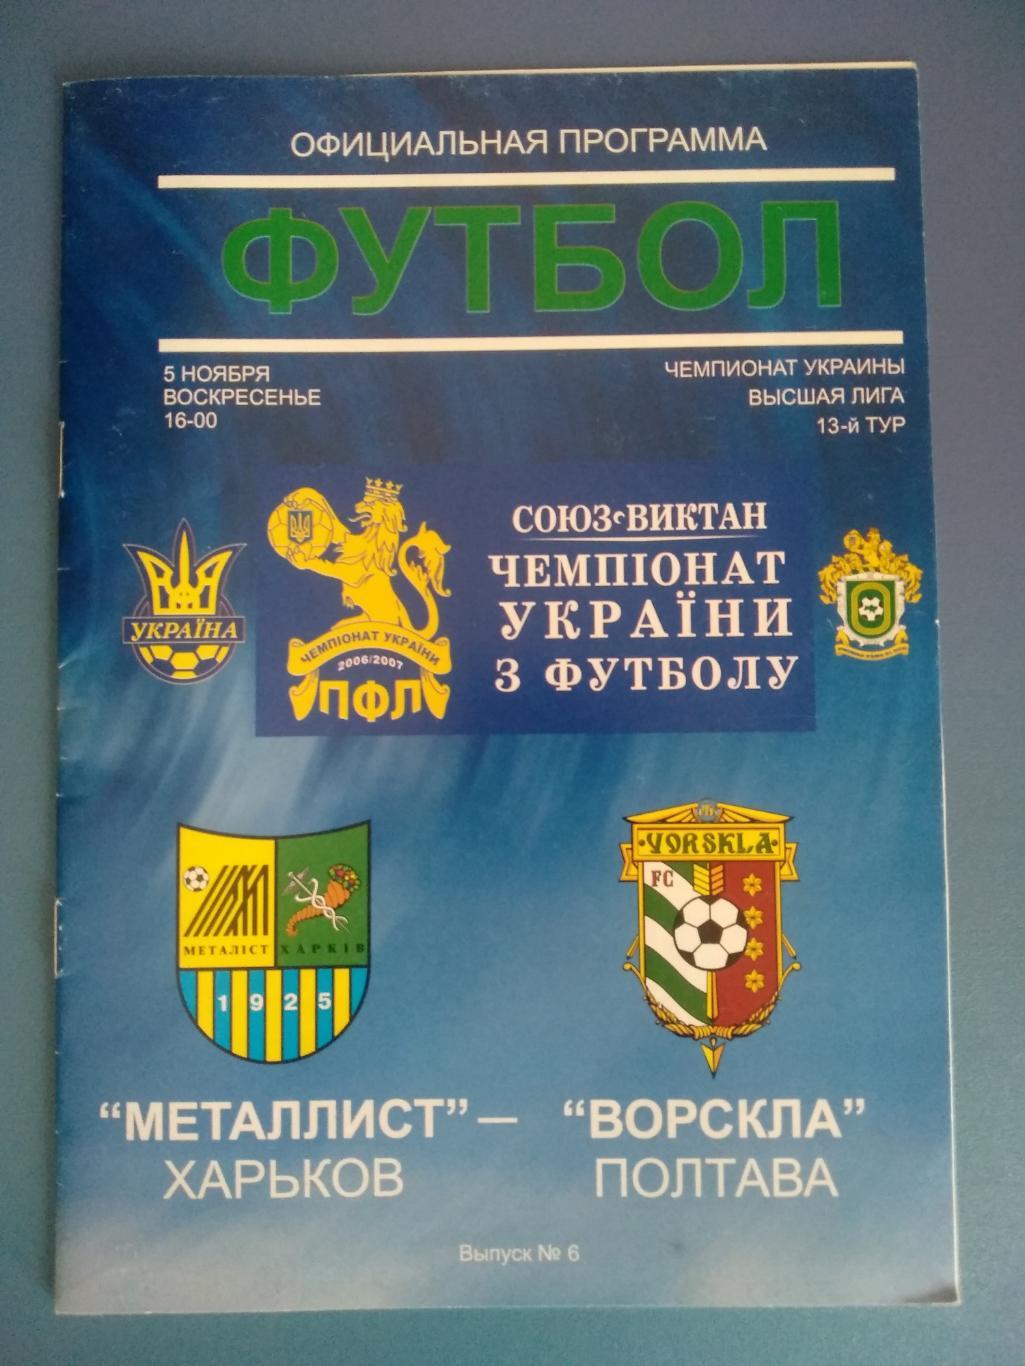 Металлист Харьков - Ворскла Полтава 2006